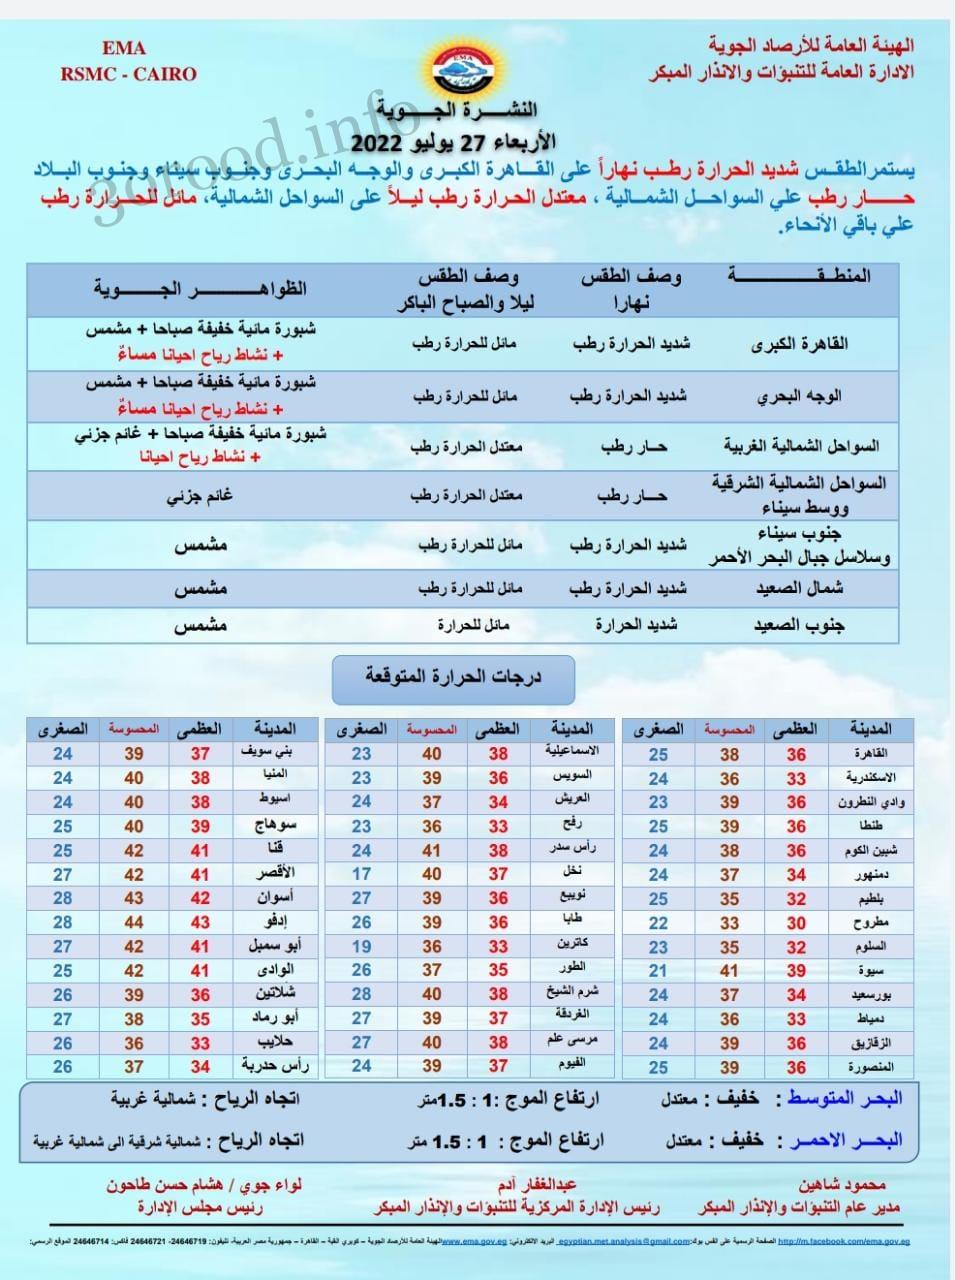 اخبار الطقس فى مصر الاربعاء 27 يوليو 2022 النشرة الجوية فى مصر